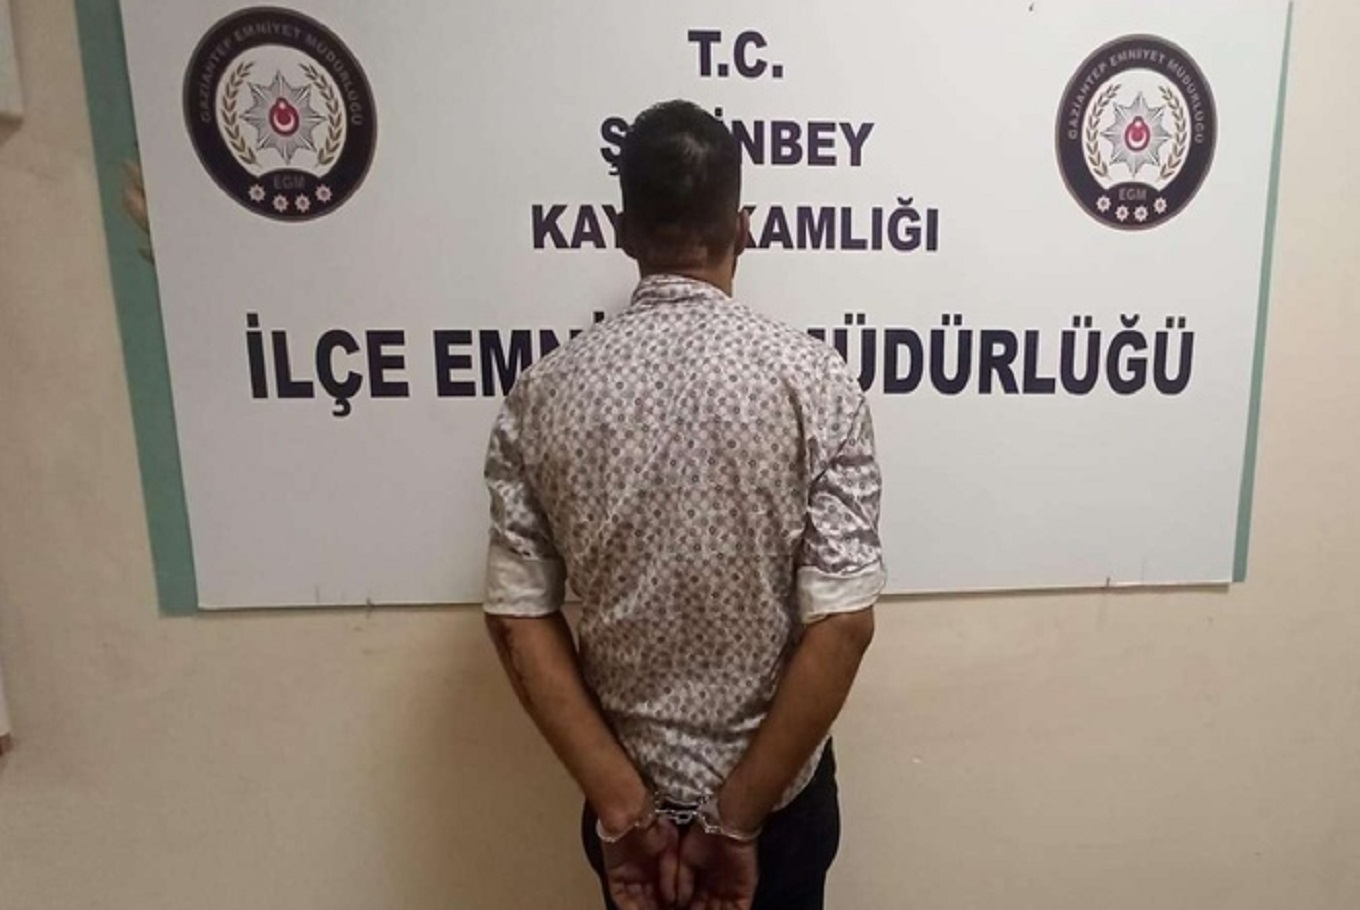 Gaziantep’te 48 adet suç kaydı bulunan şahıs yakalandı